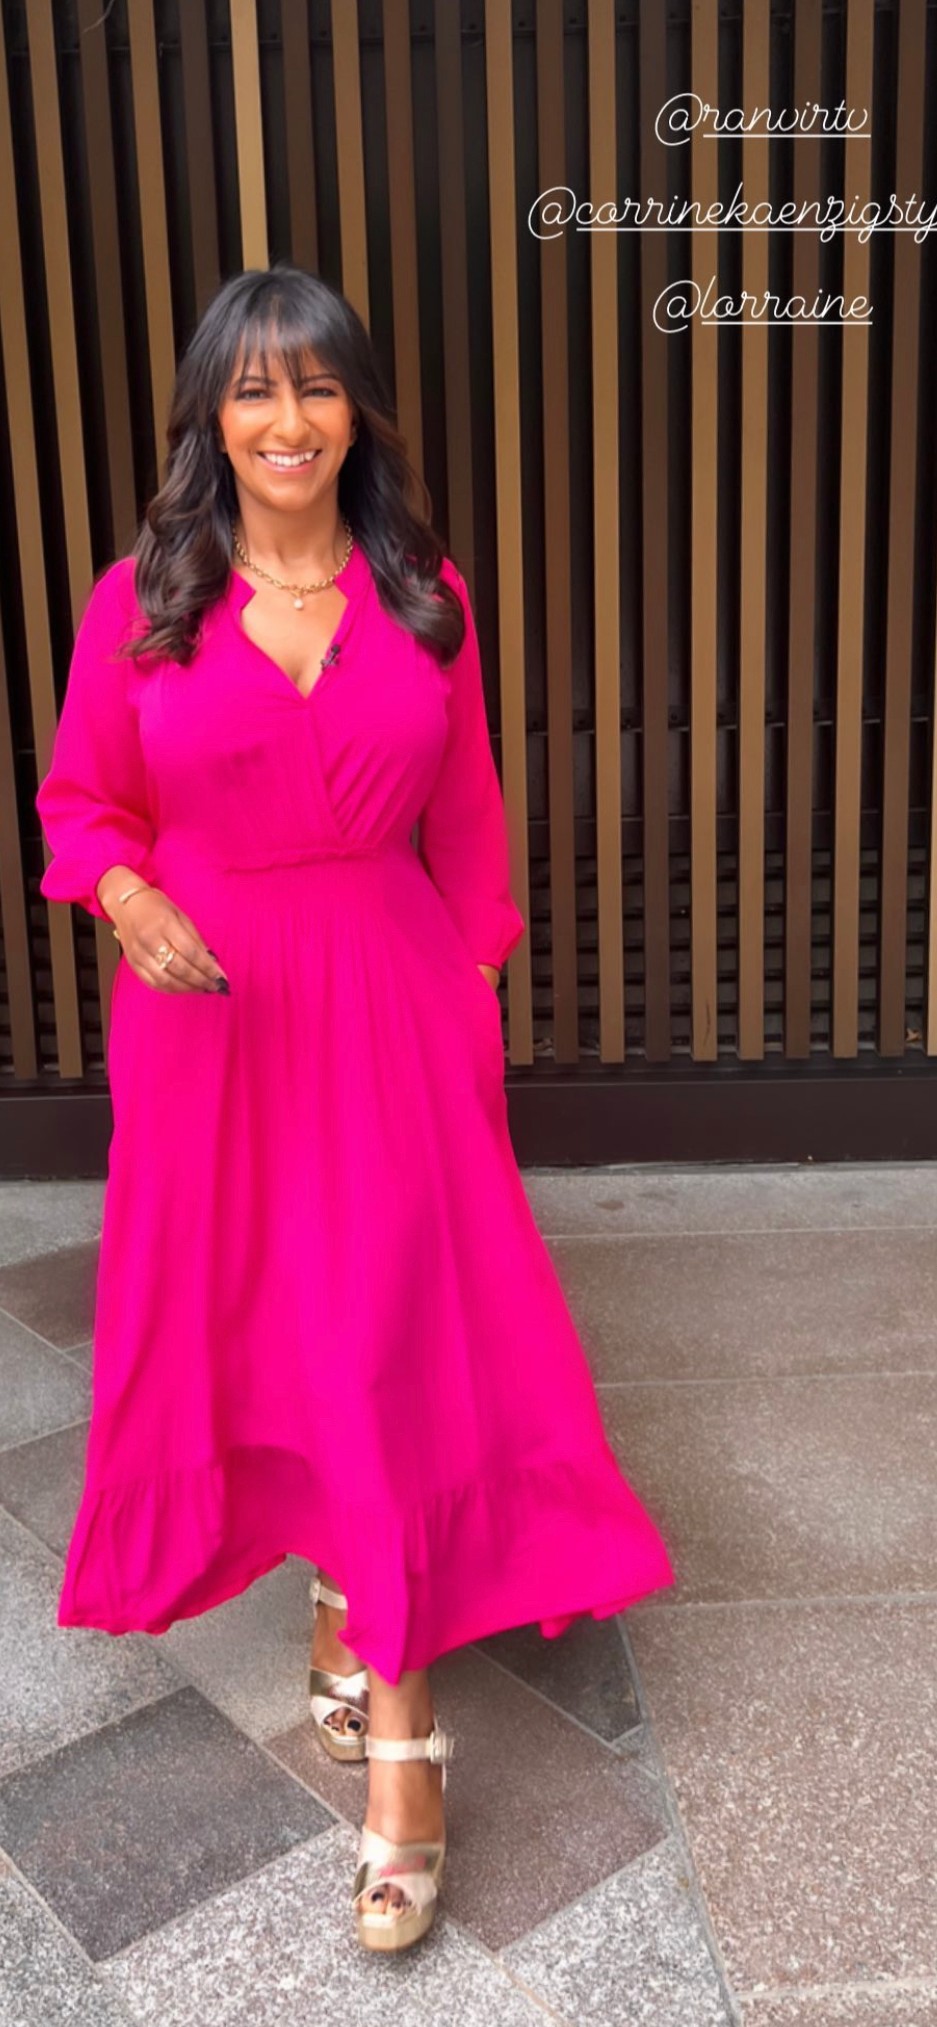 Ranvir singh on lorraine in pink dress instagram